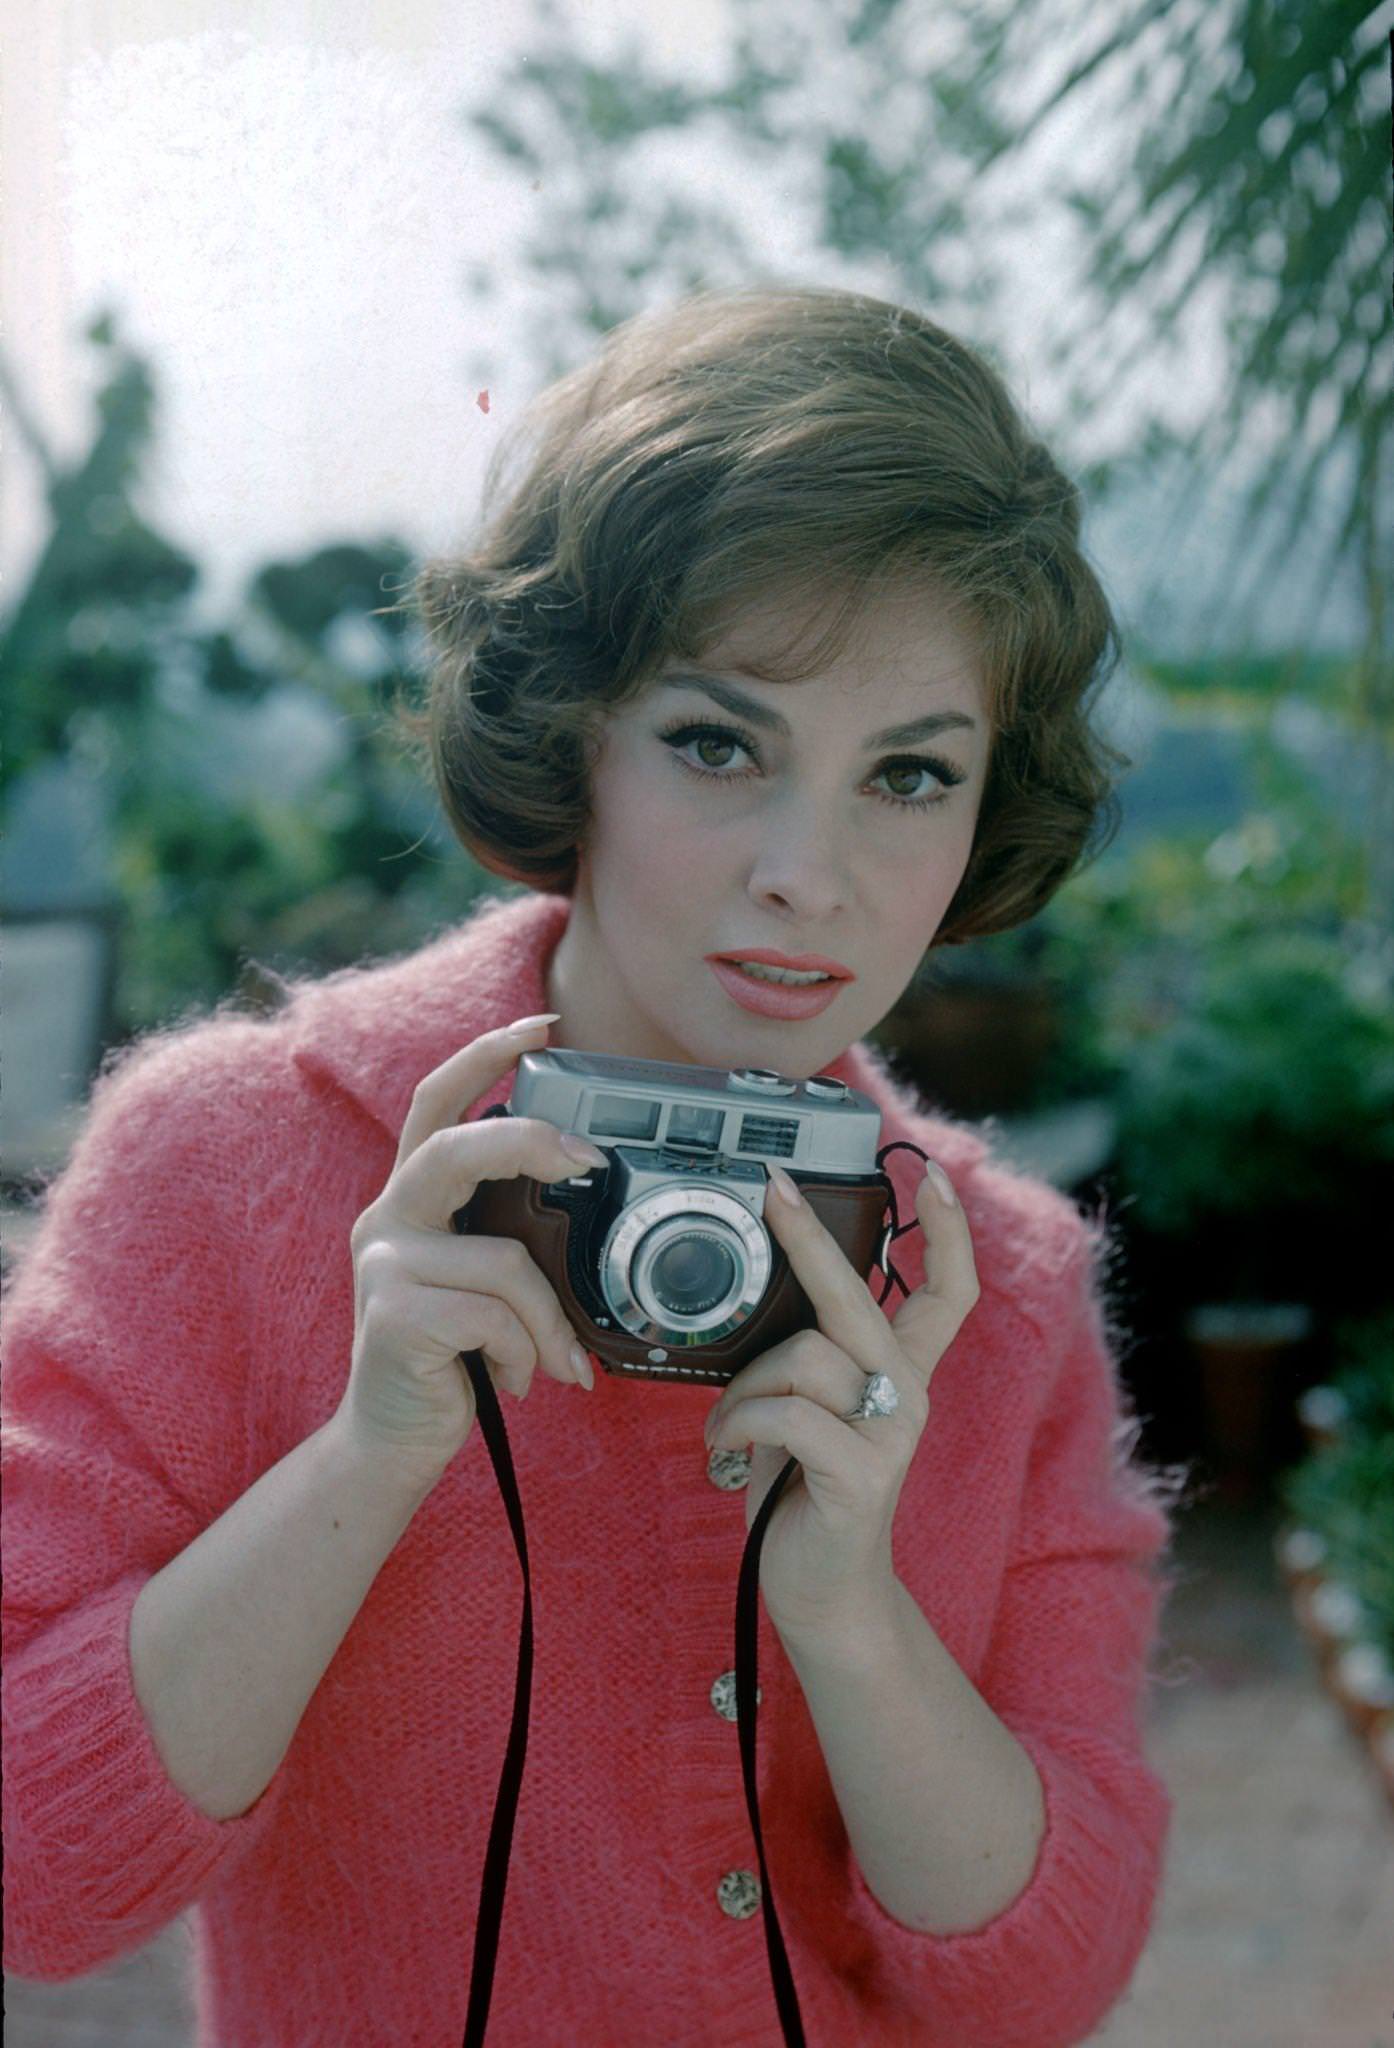 Gina Lollobrigida poses with a camera in Portofino, Italy, 1960.